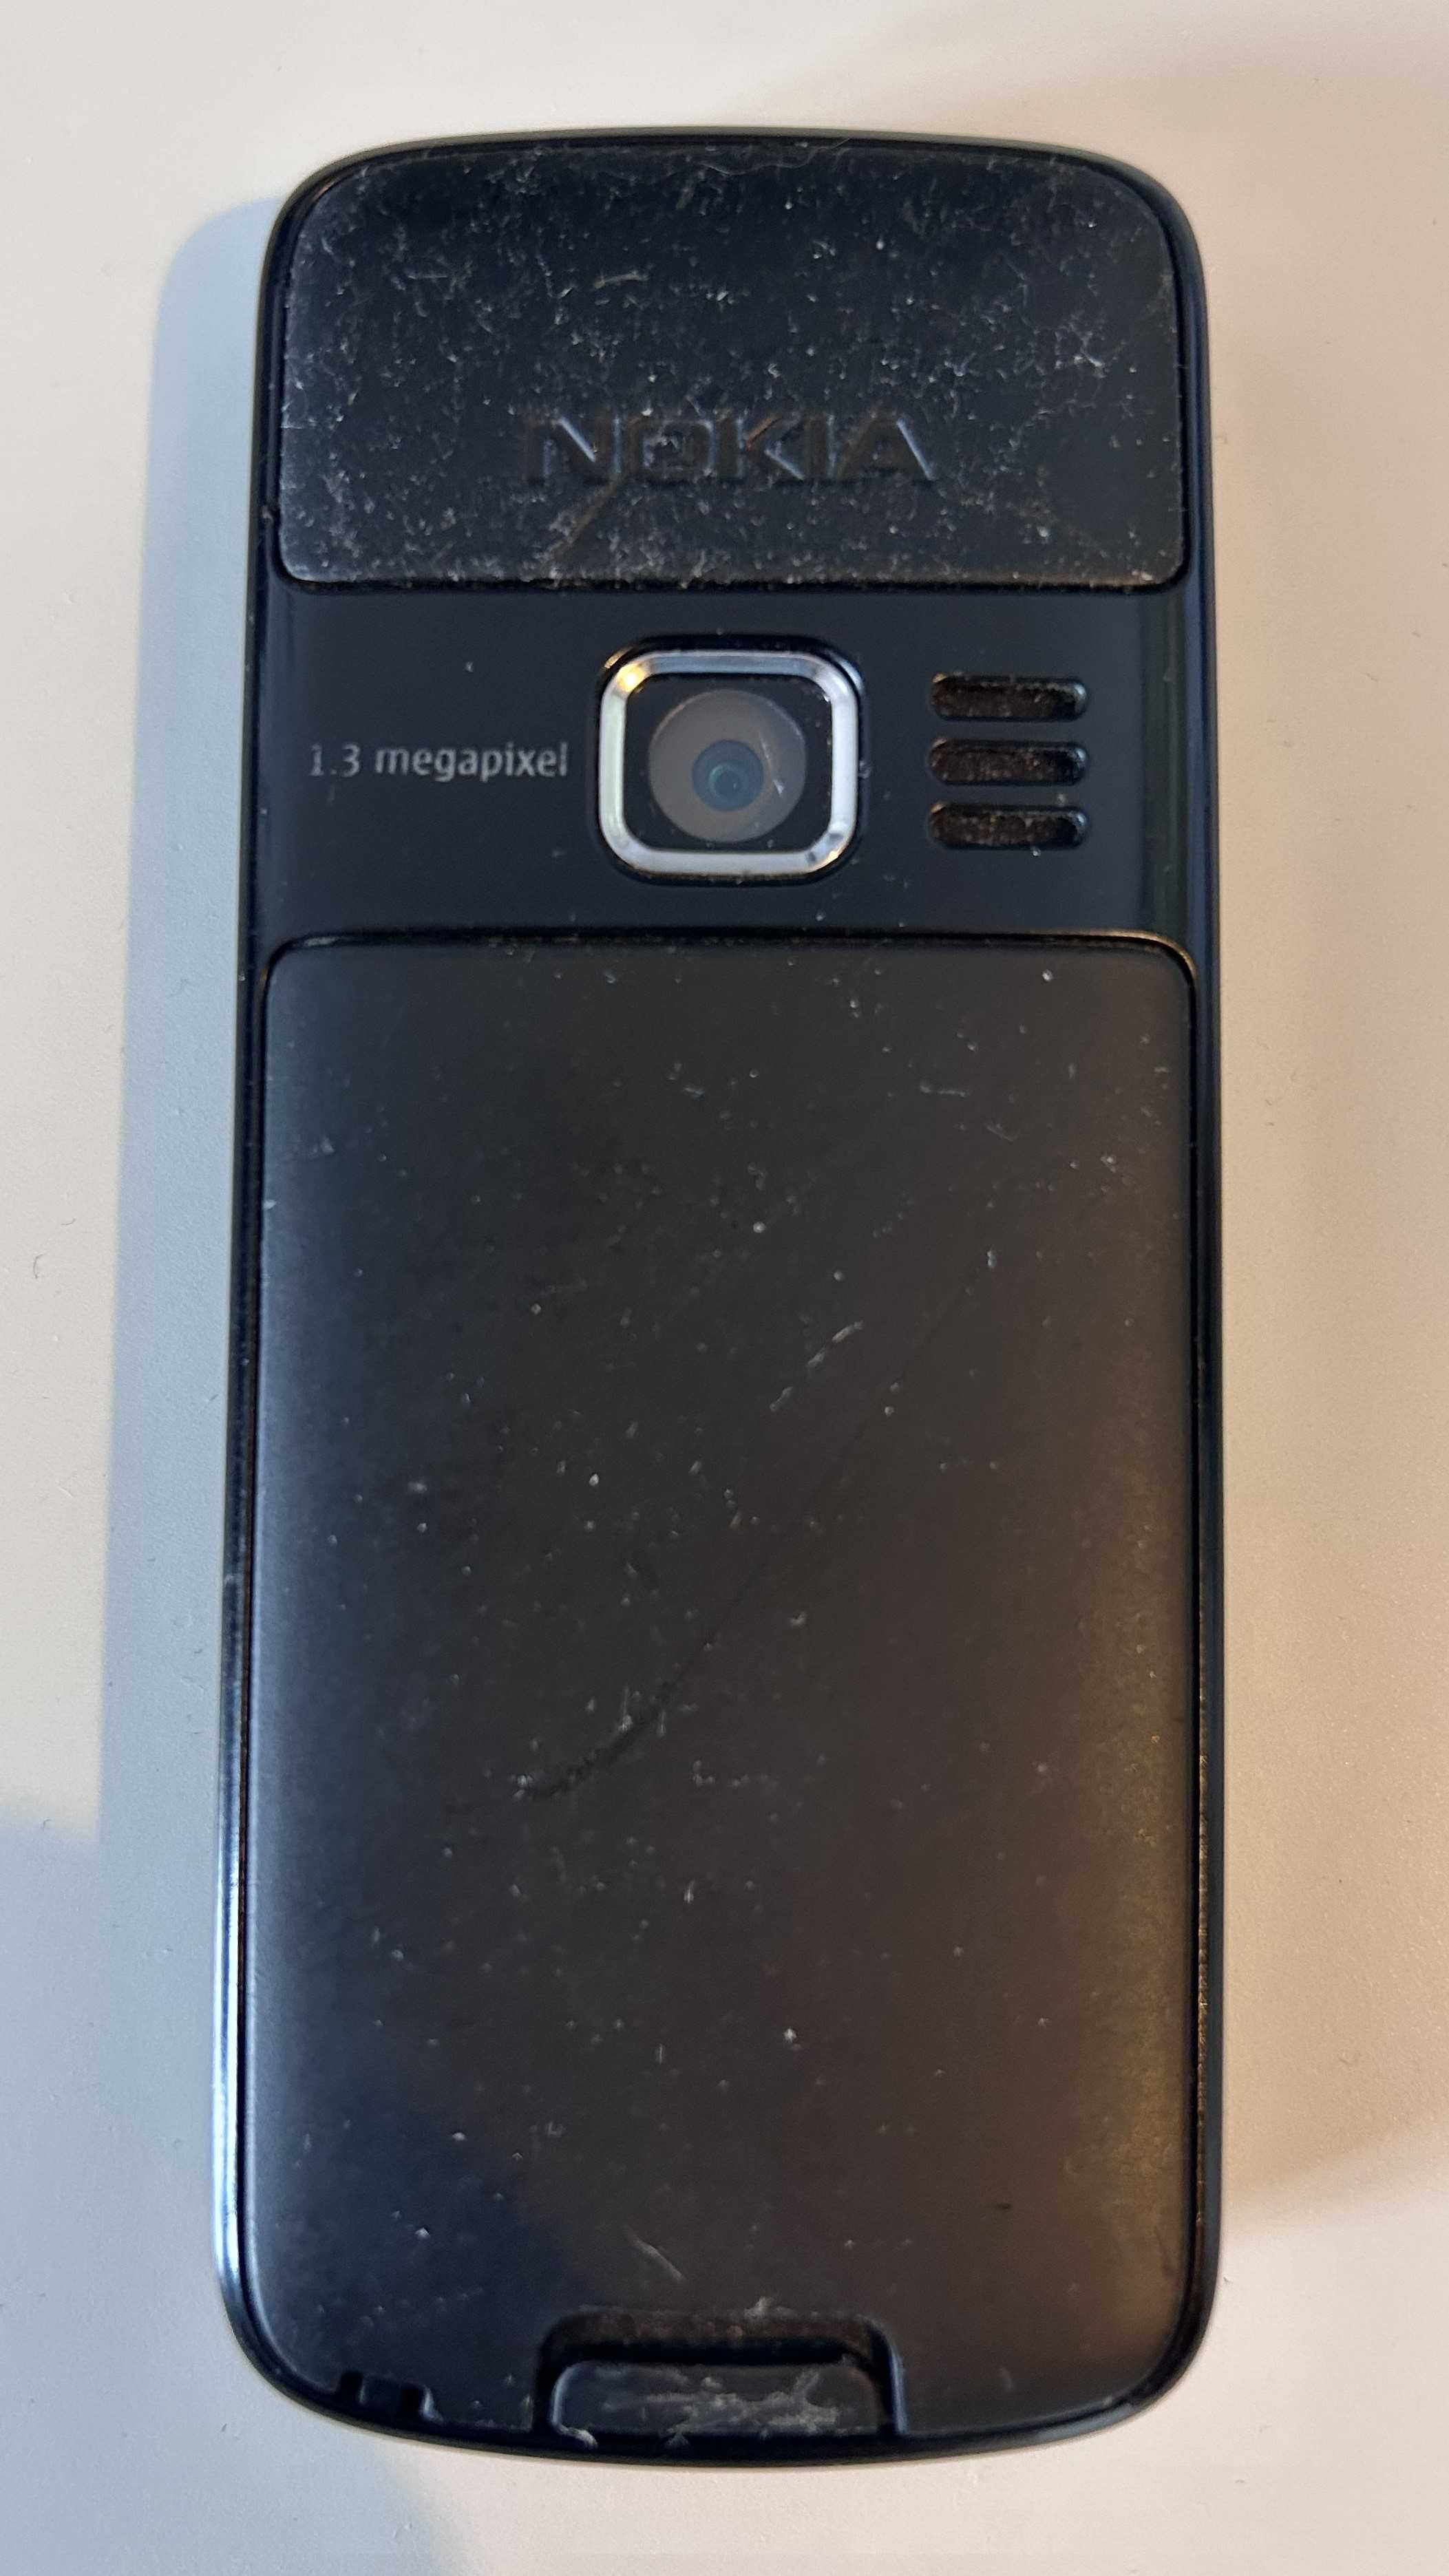 Nokia 3110c - sprawny telefon